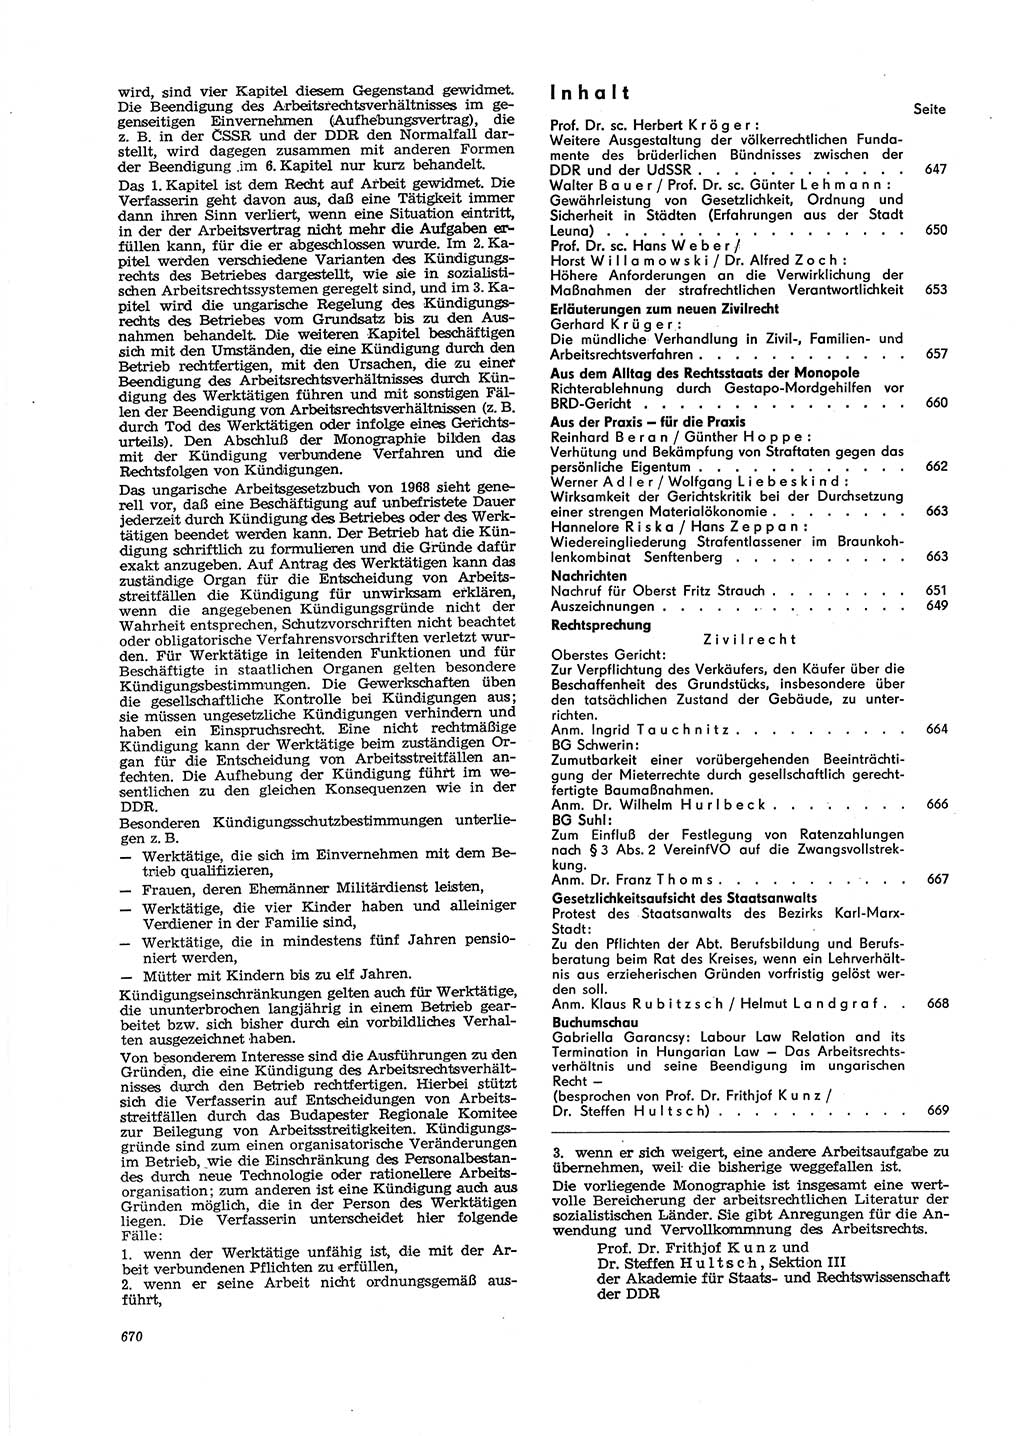 Neue Justiz (NJ), Zeitschrift für Recht und Rechtswissenschaft [Deutsche Demokratische Republik (DDR)], 29. Jahrgang 1975, Seite 670 (NJ DDR 1975, S. 670)